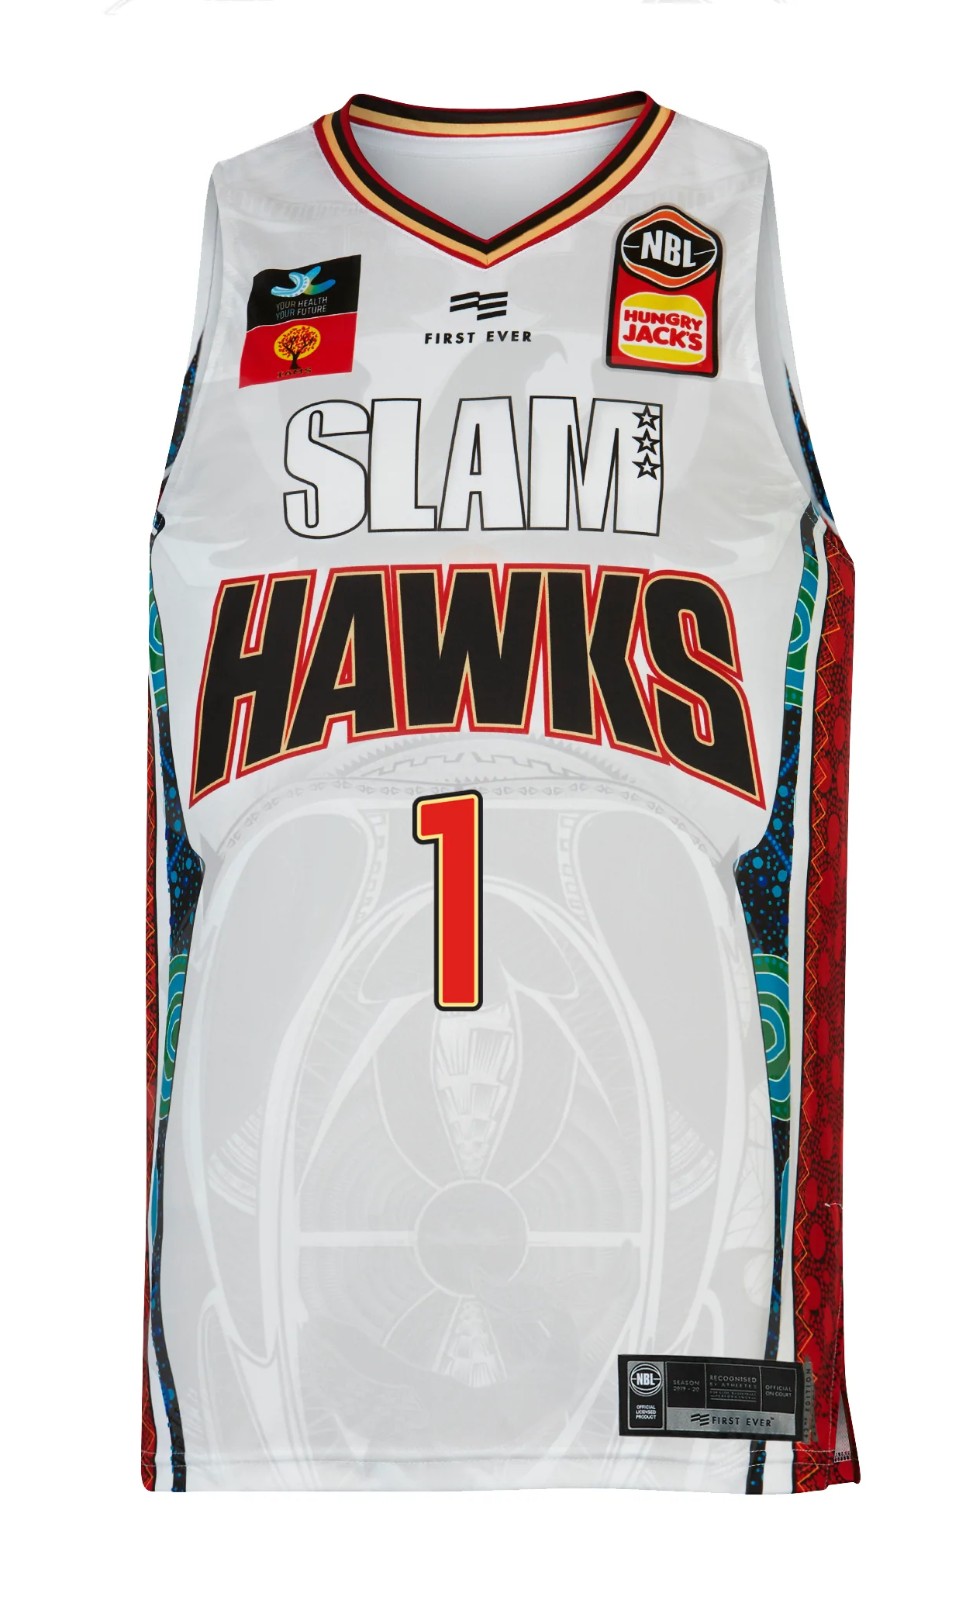 SLAM to serve as Illawarra Hawks jersey sponsor for 2019-20 season